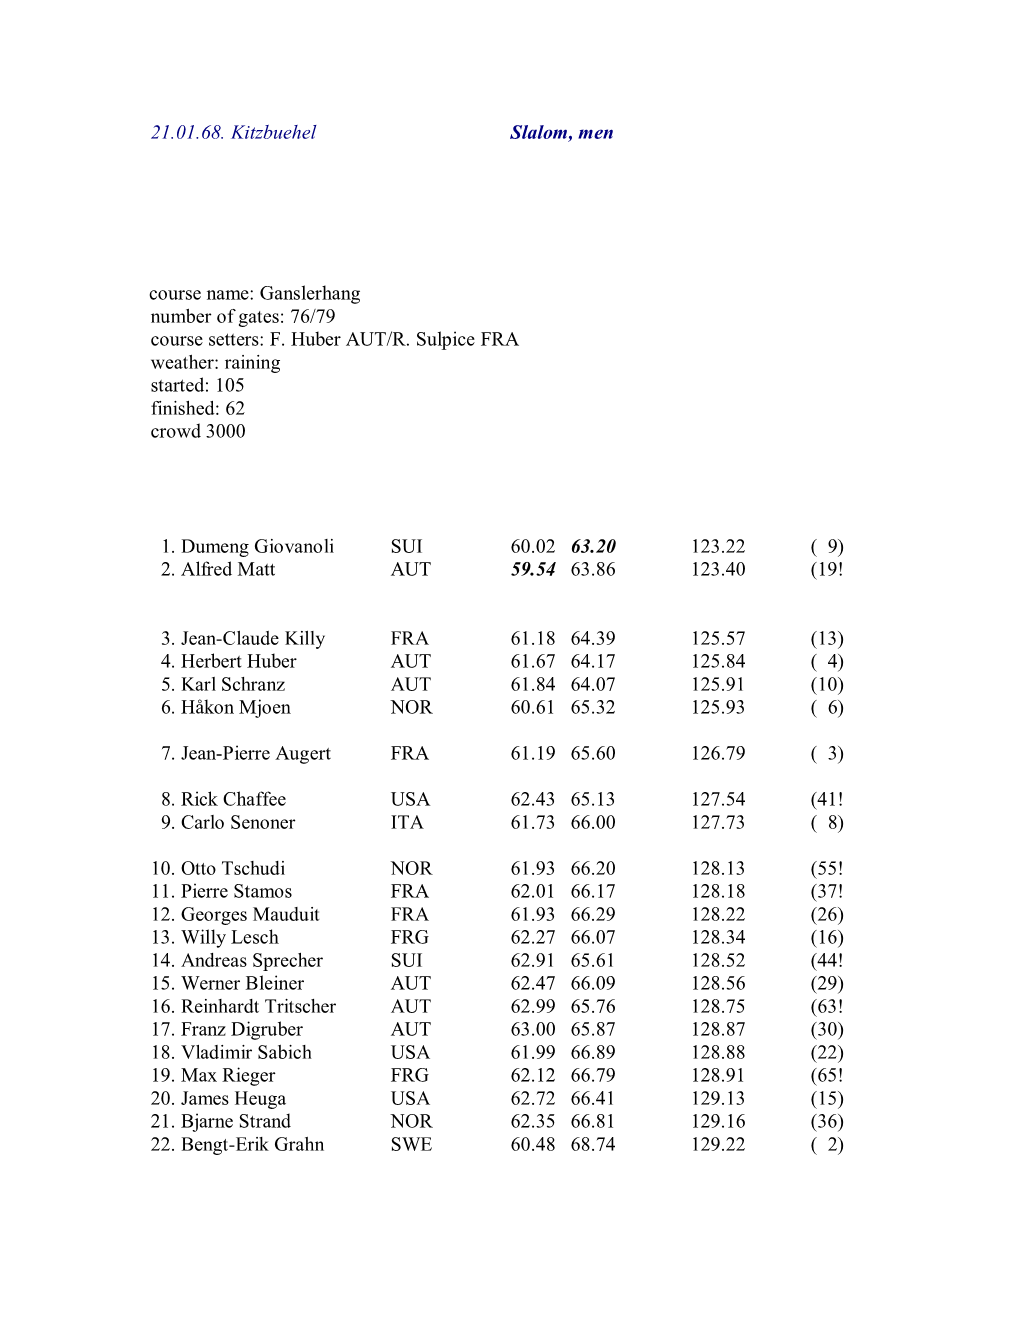 21.01.68. Kitzbuehel Slalom, Men Course Name: Ganslerhang Number